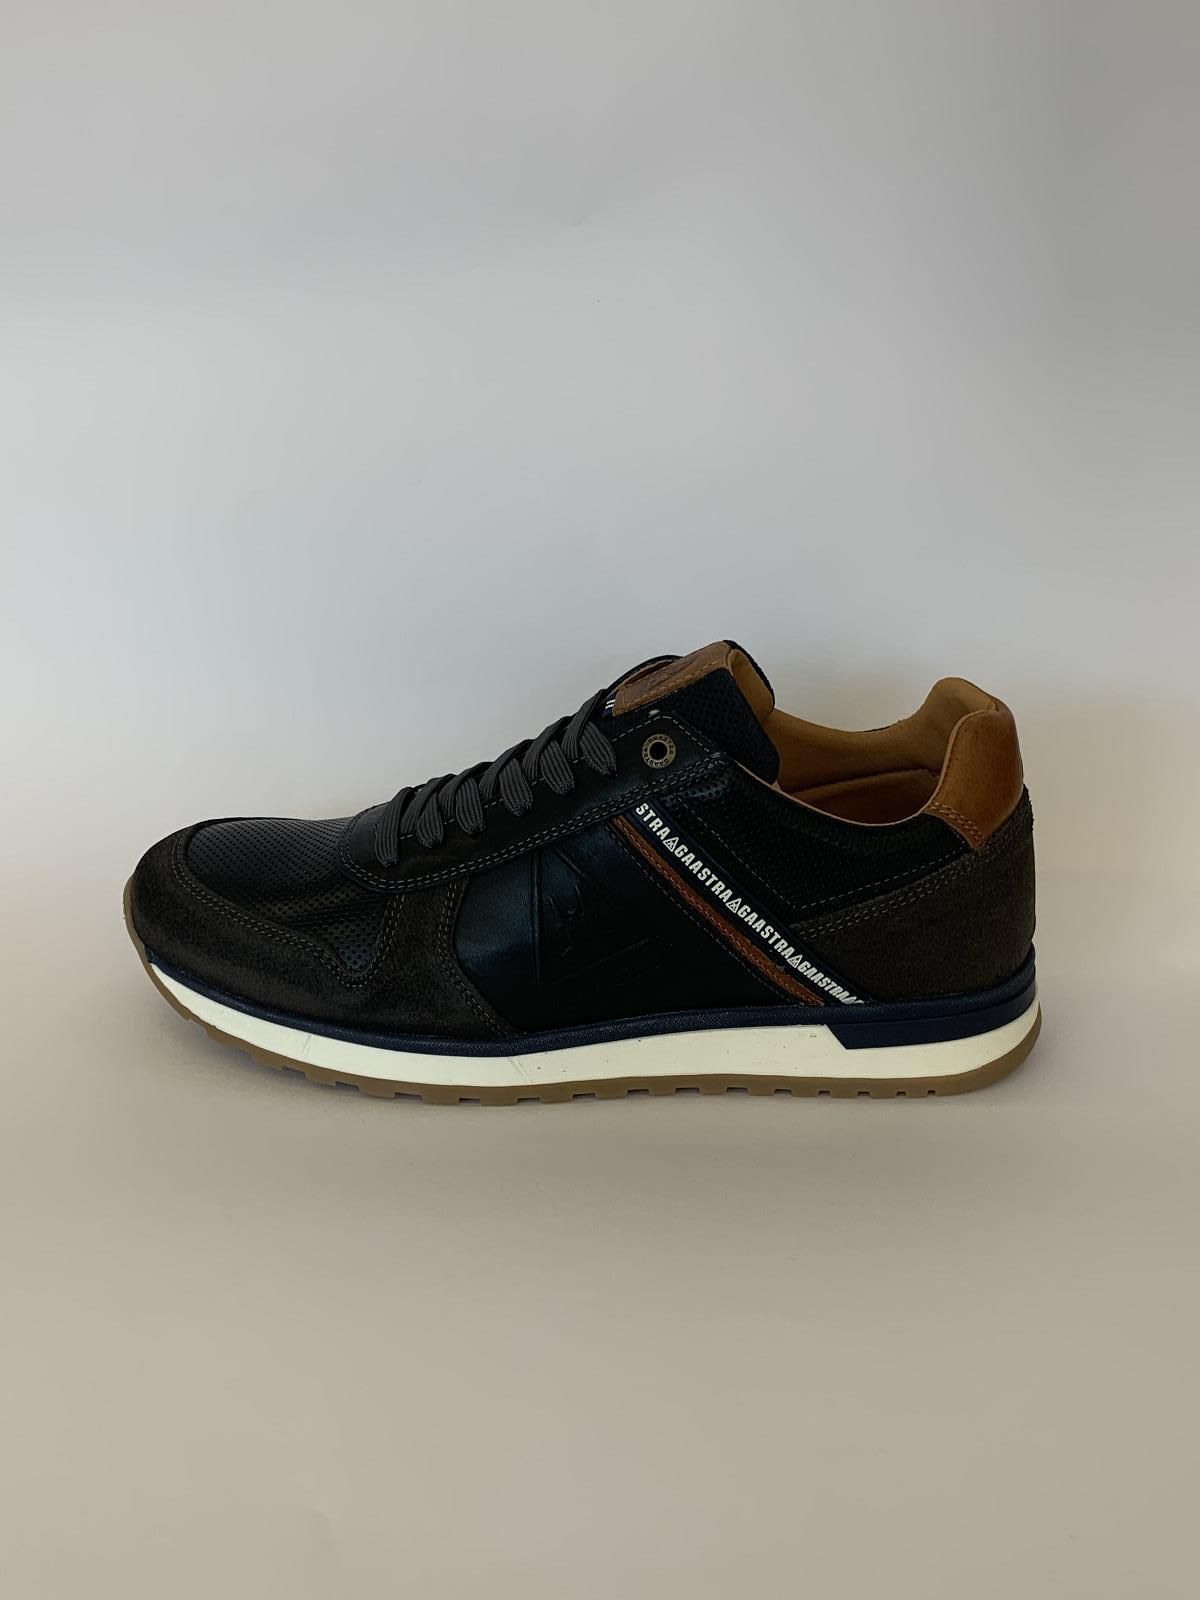 Gaastra Sneaker Blauw+kleur heren (Runner Bl-Br-Gr - Kevan) - Schoenen Luca